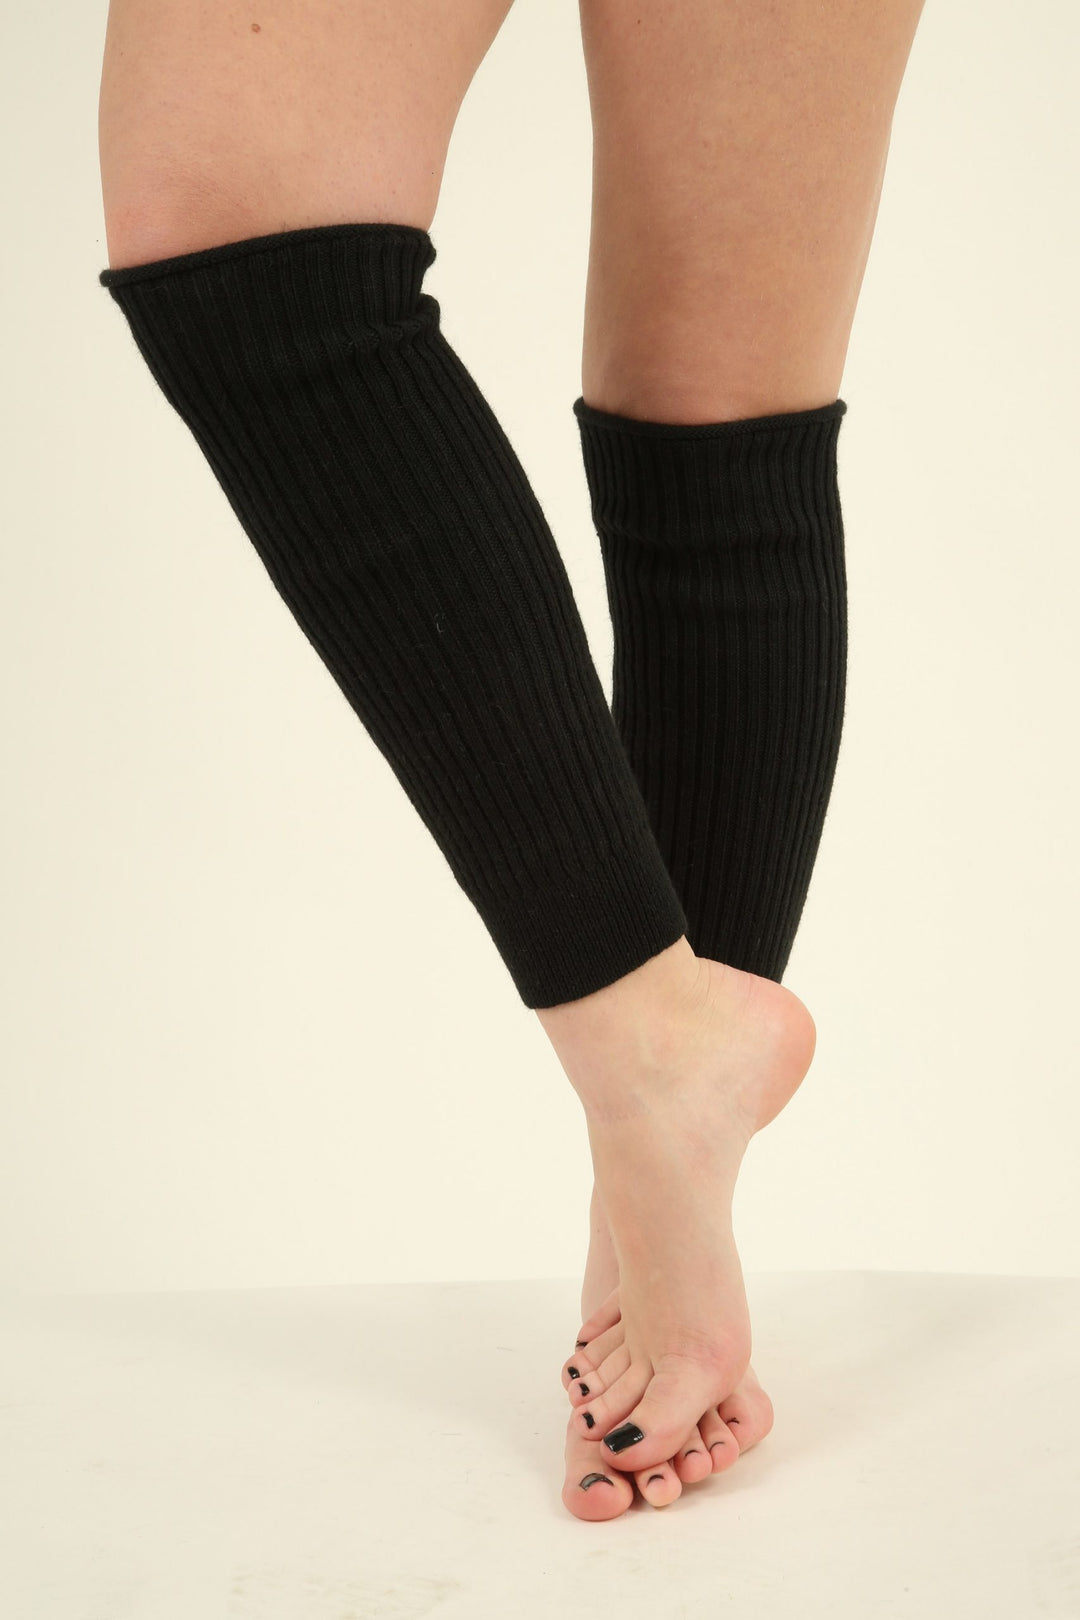 WOOL ALPACA Knitted Short Leg Warmers With Heel for Women Warm Toeless  Dance Flip Flop Socks Sport Yoga Pedicure Socks Black White Gray Blue -   Canada